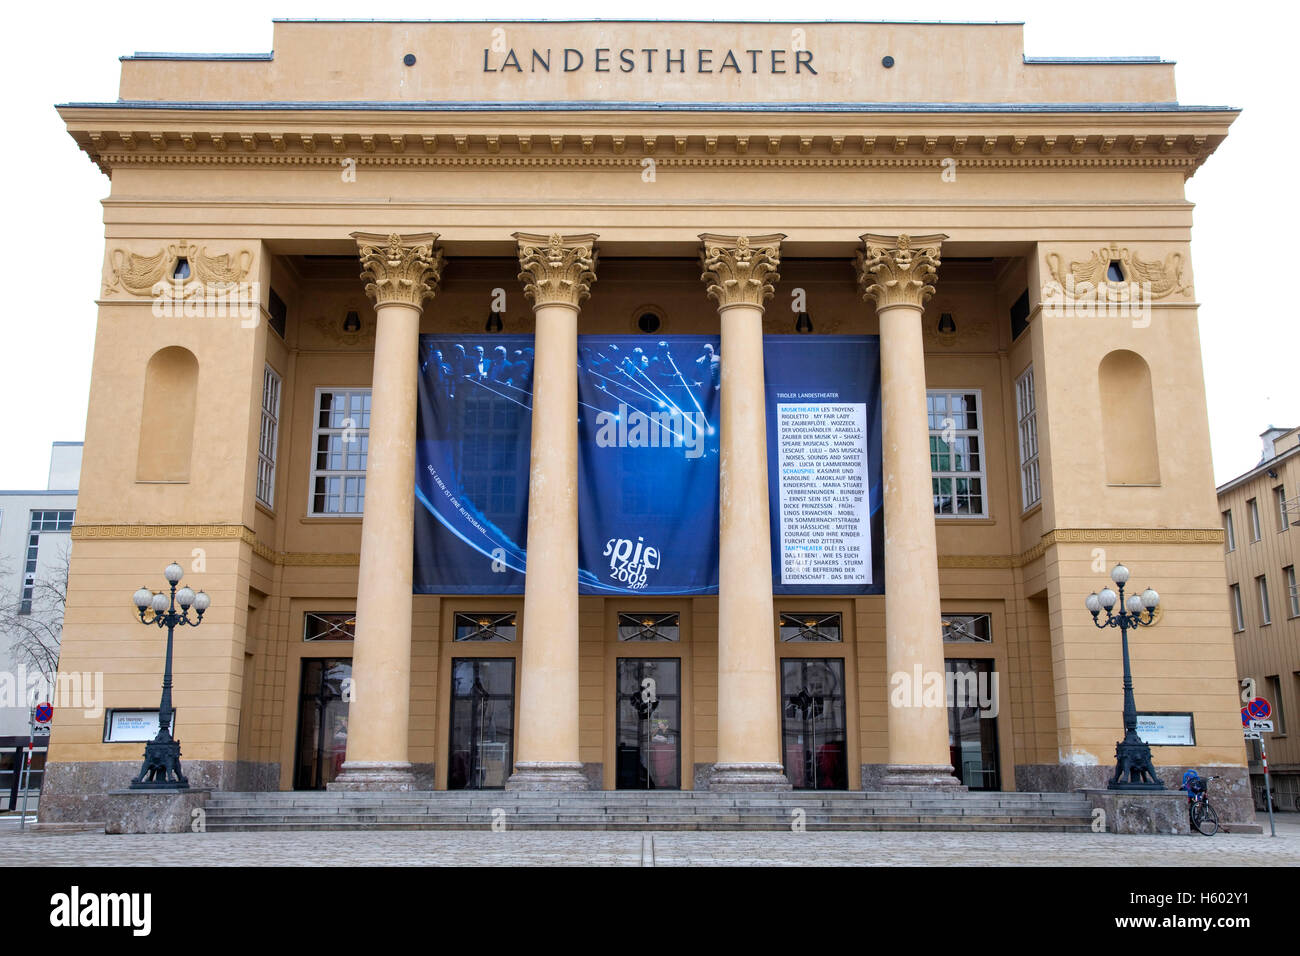 Staatliche Theater, Landestheater, Landeshauptstadt Innsbruck, Tirol, Austria, Europe Stockfoto